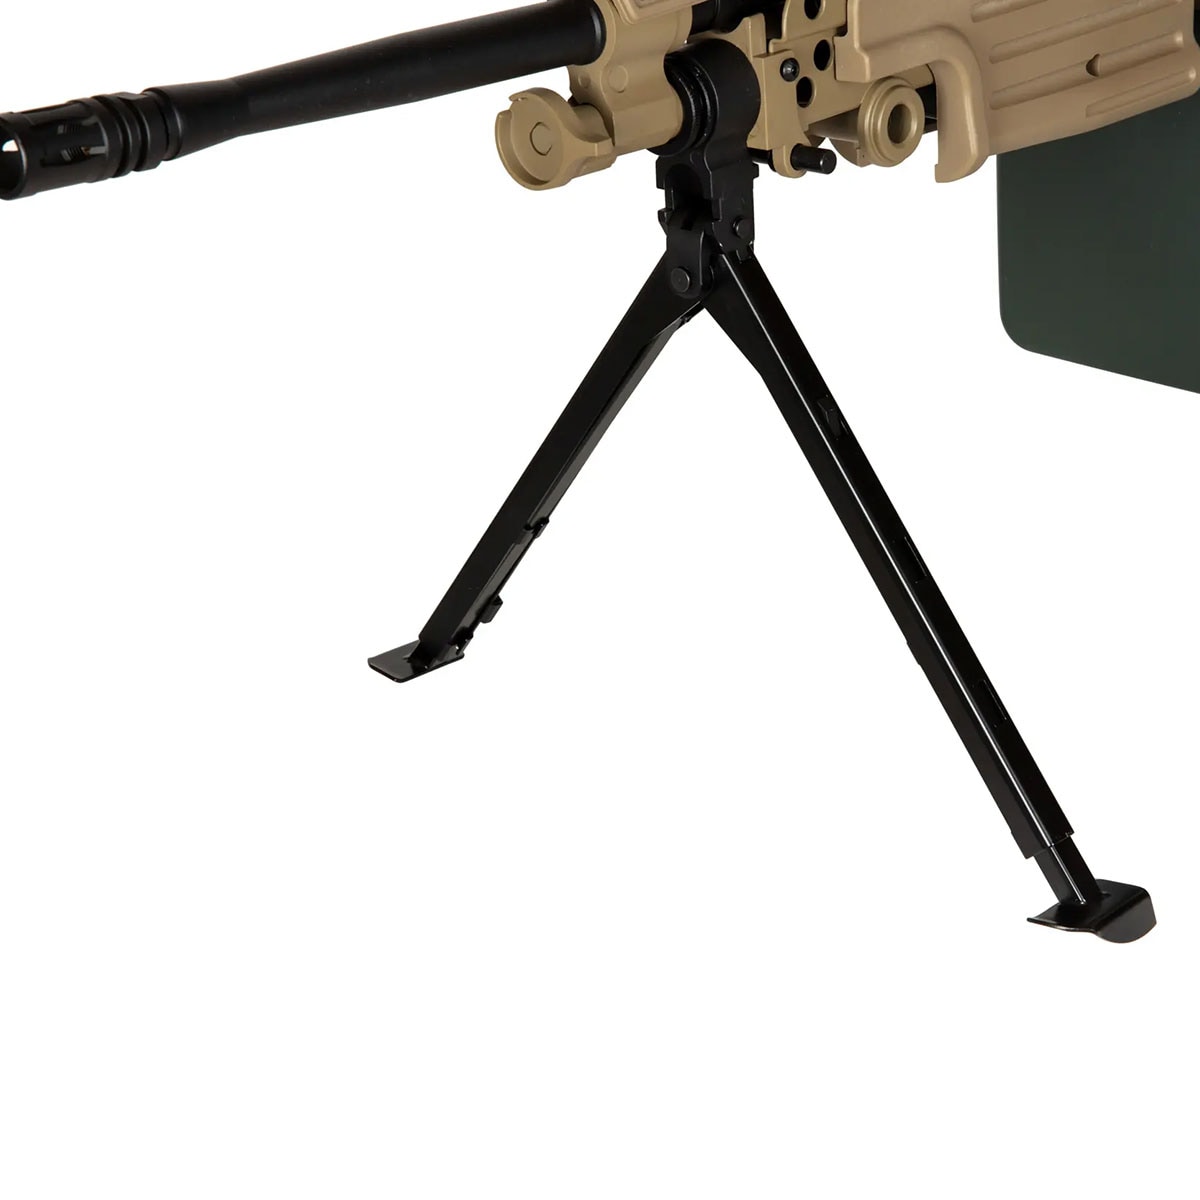 Karabin maszynowy AEG Specna Arms SA-249 MK2 EDGE - Tan